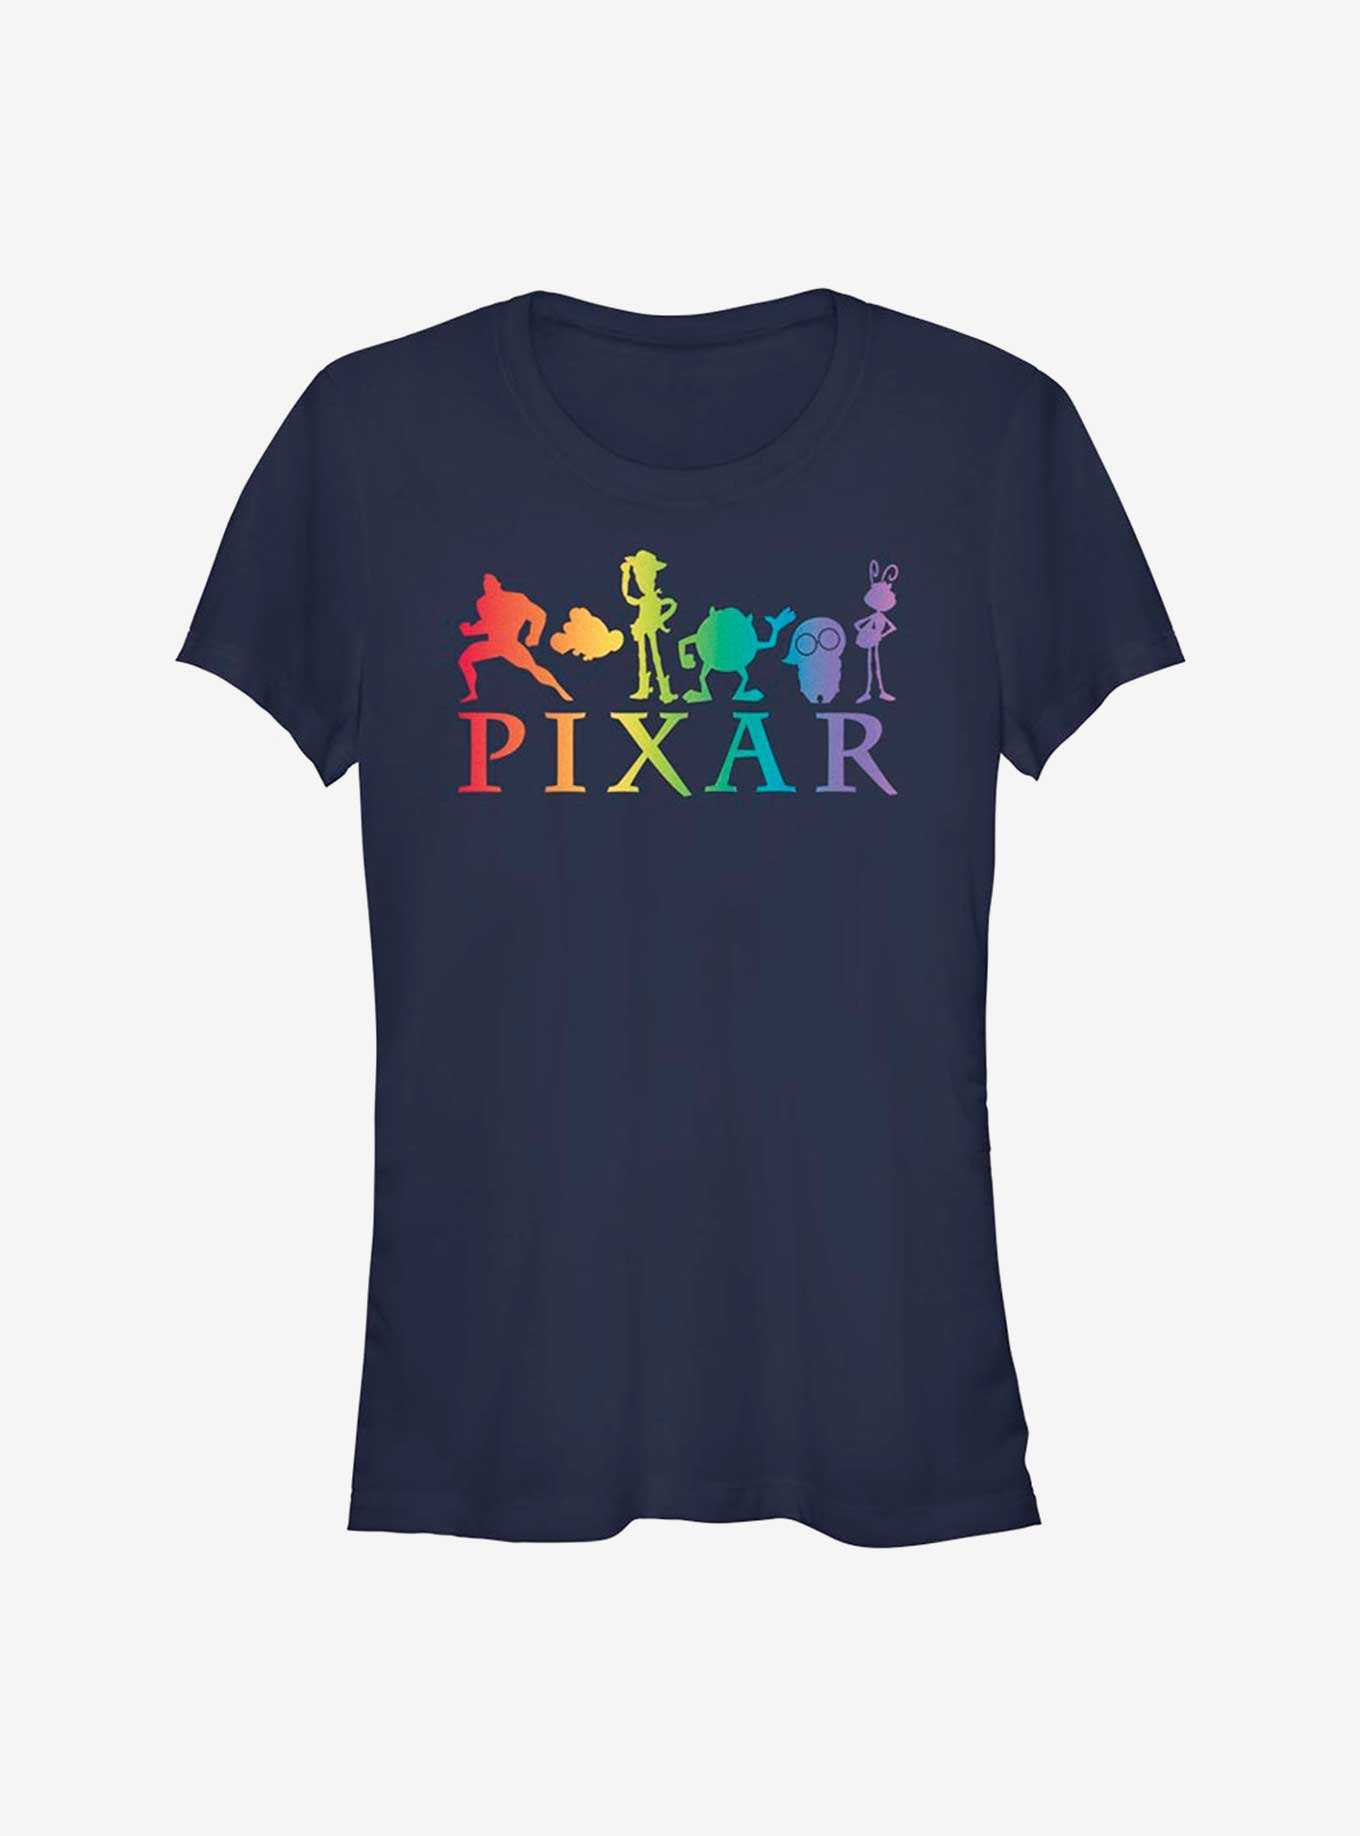 Pixar Lineup Pride T-Shirt, , hi-res